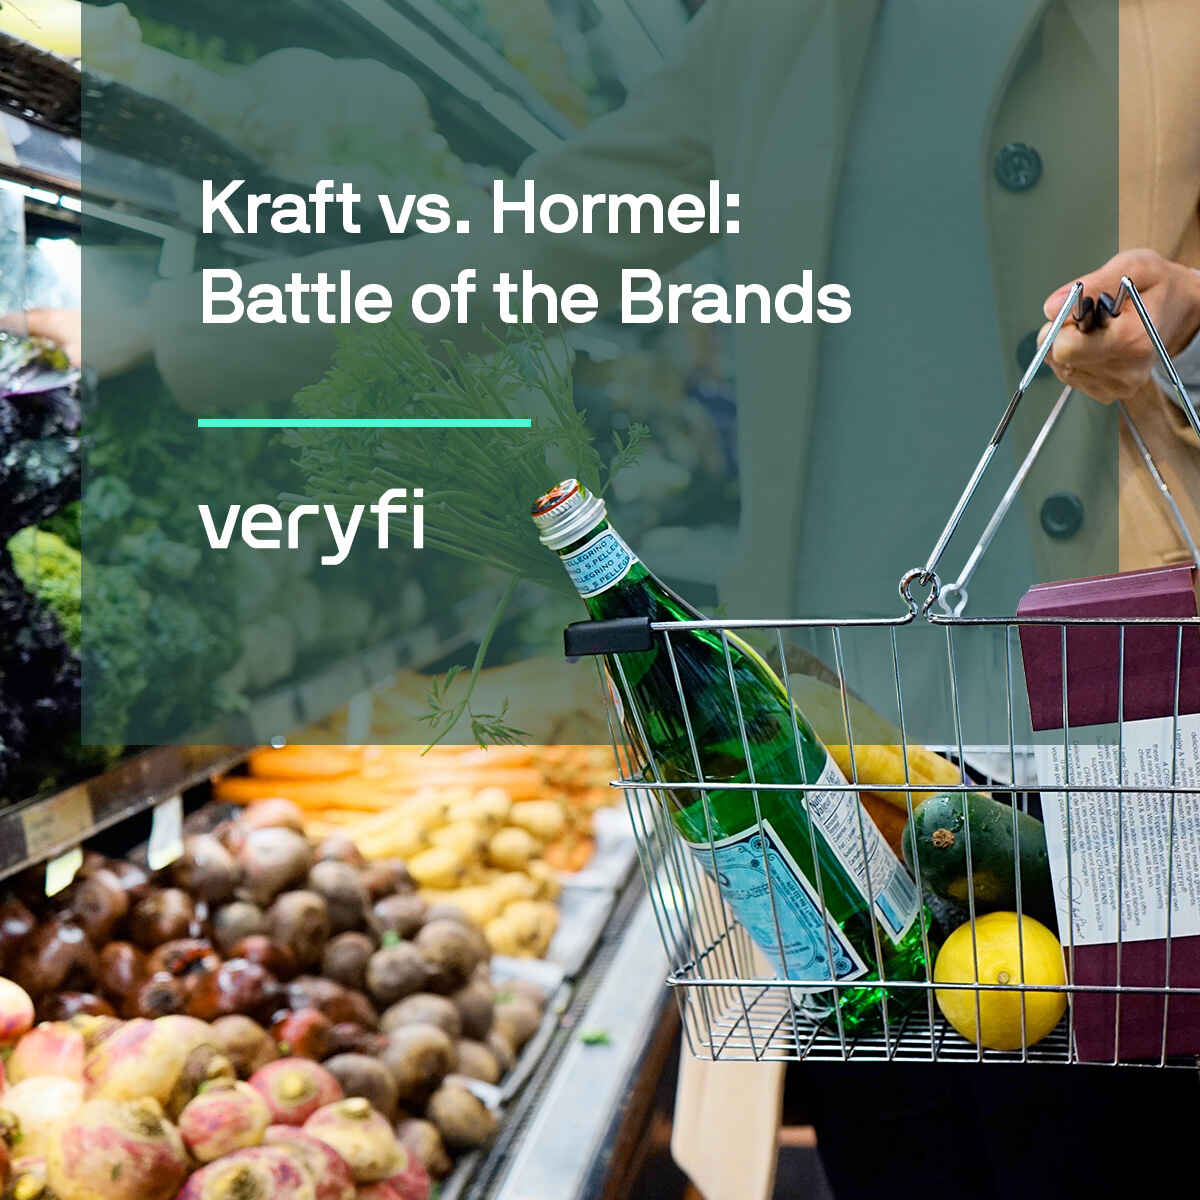 Kraft vs. Hormel: Battle of the Brands